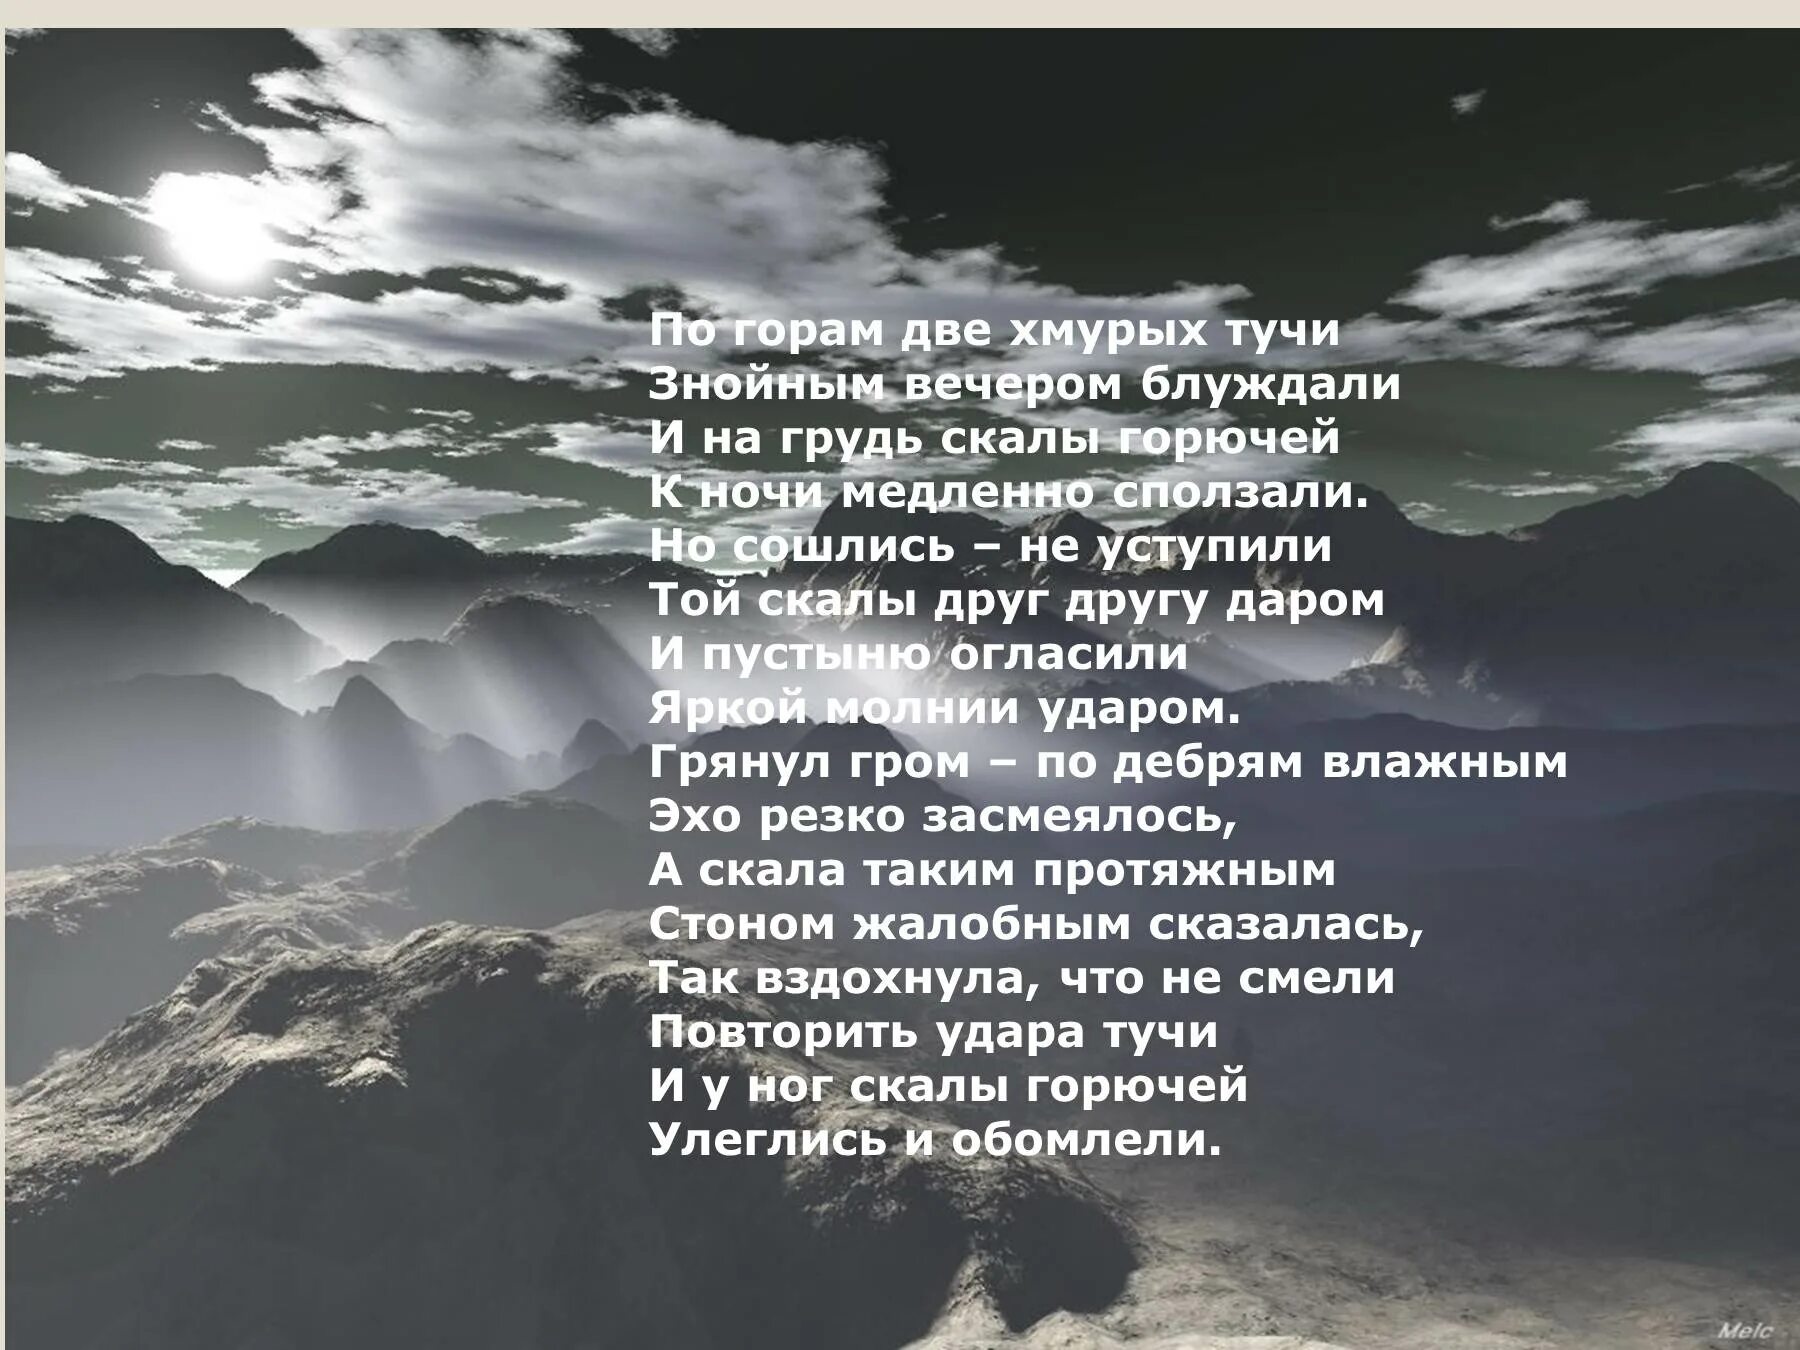 Среди серых облаков текст. Стихотворение Полонского по горам 2 хмурых тучи.